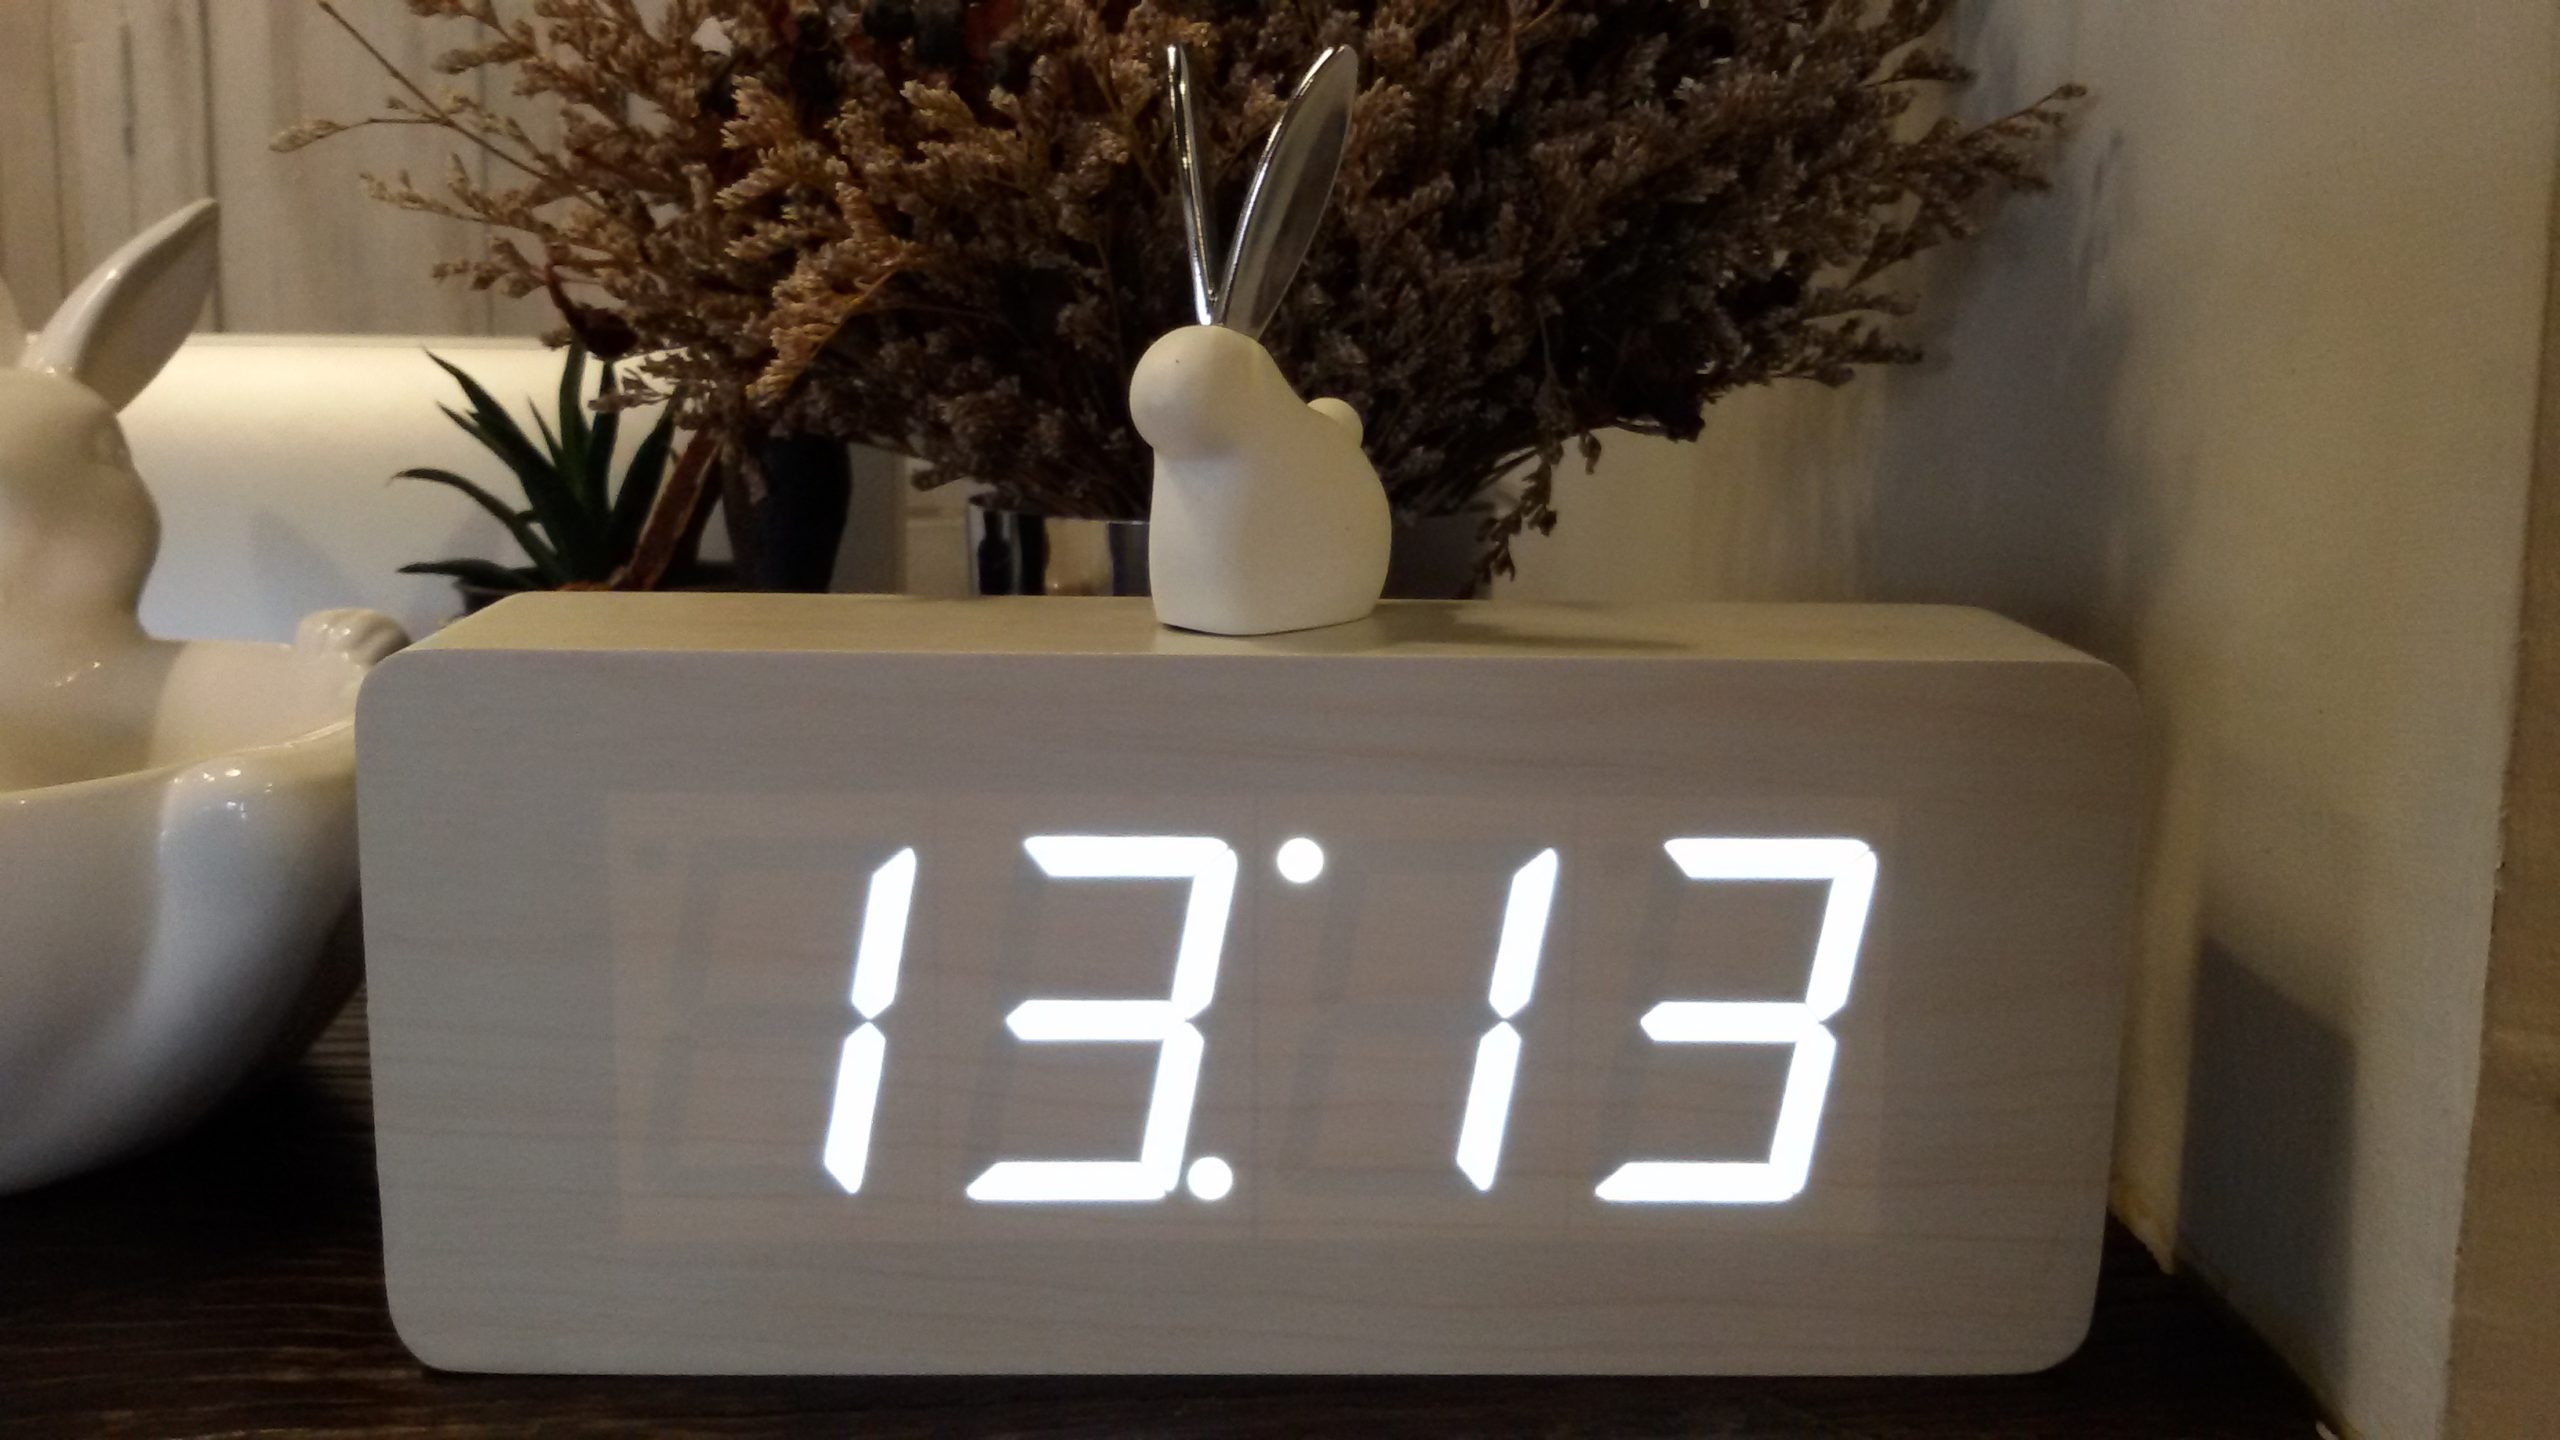 Видеть время 10 10. 11 11 Электронные часы. Одинаковые цифры на часах. Одинаковые цифры часов. Цифры на электронных часах.